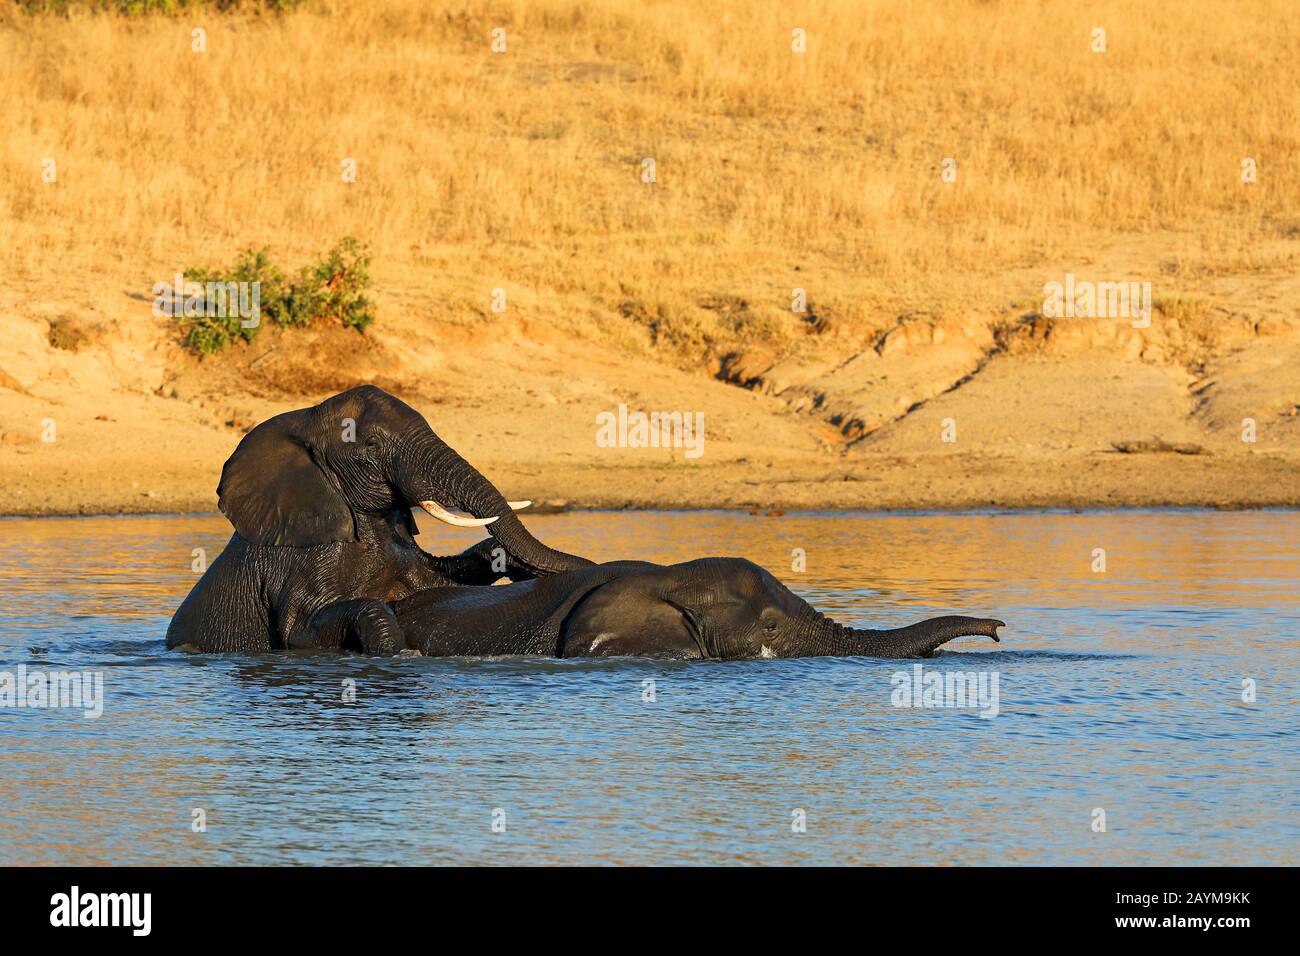 Afrikanische Elefanten (Loxodonta africana), zwei Elefanten spielen im Wasser, Südafrika, Kwazulu-Natal, Mkhuze Game Reserve Stockfoto